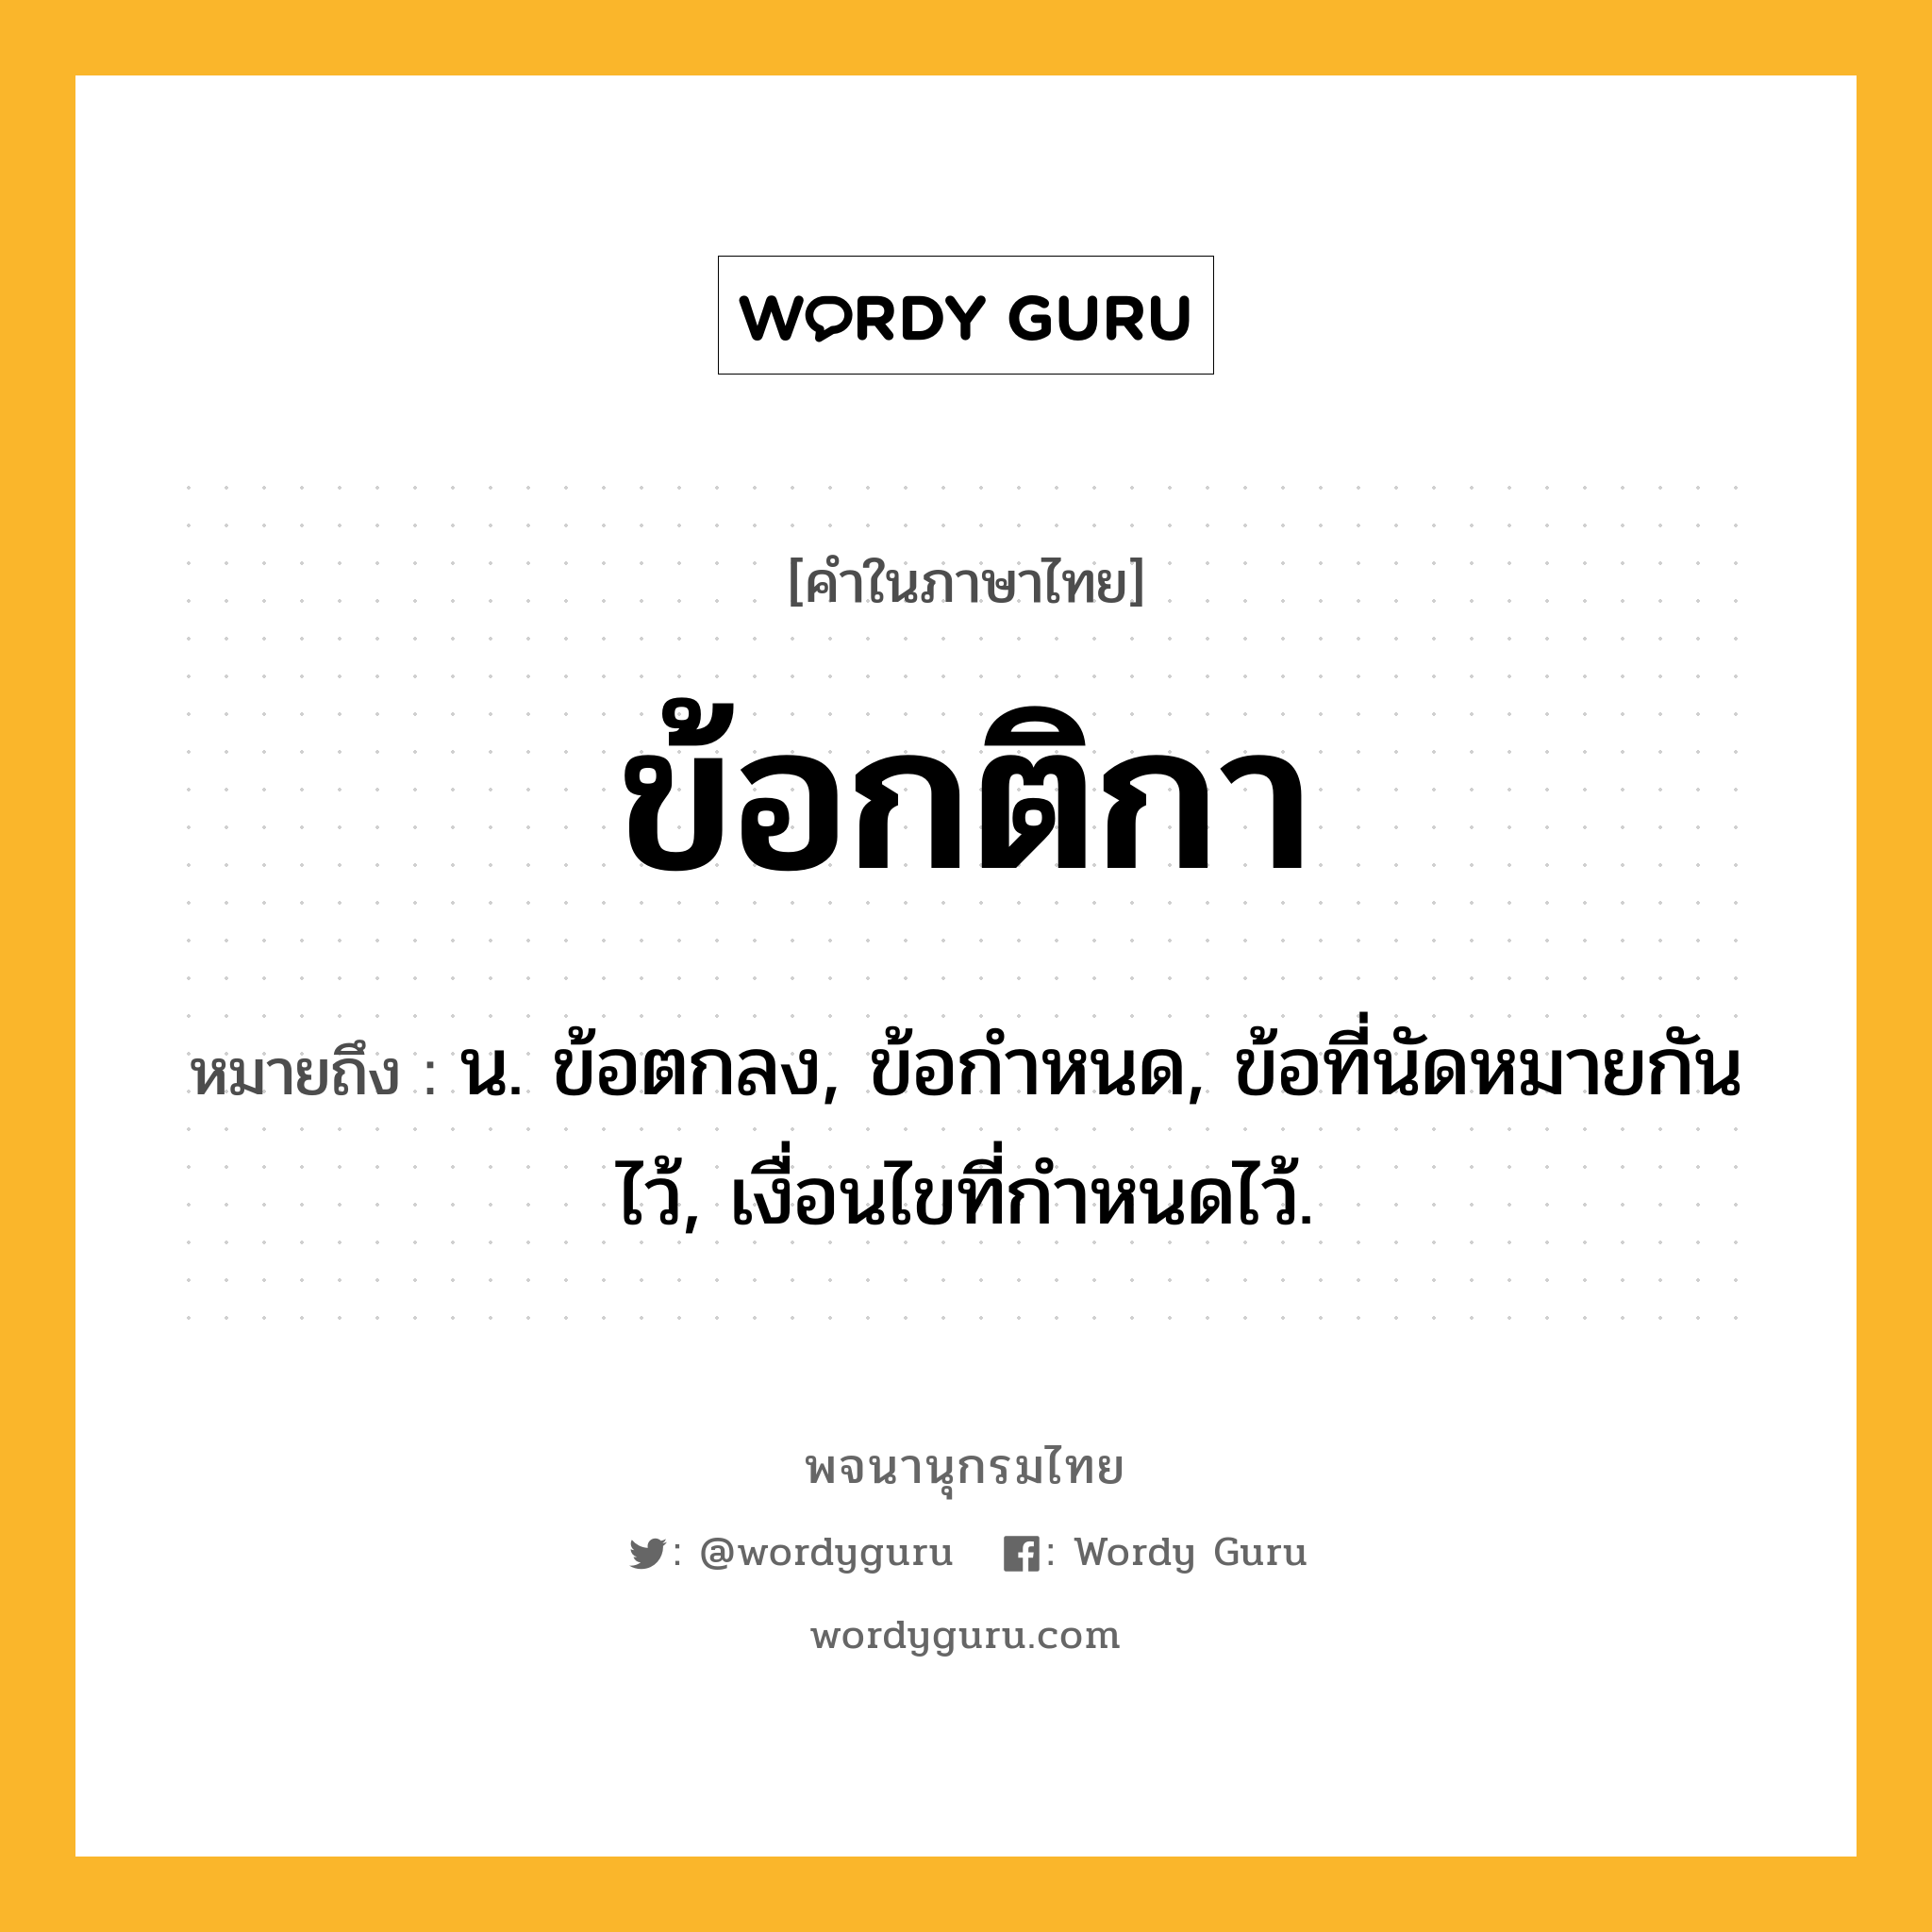 ข้อกติกา หมายถึงอะไร?, คำในภาษาไทย ข้อกติกา หมายถึง น. ข้อตกลง, ข้อกําหนด, ข้อที่นัดหมายกันไว้, เงื่อนไขที่กําหนดไว้.